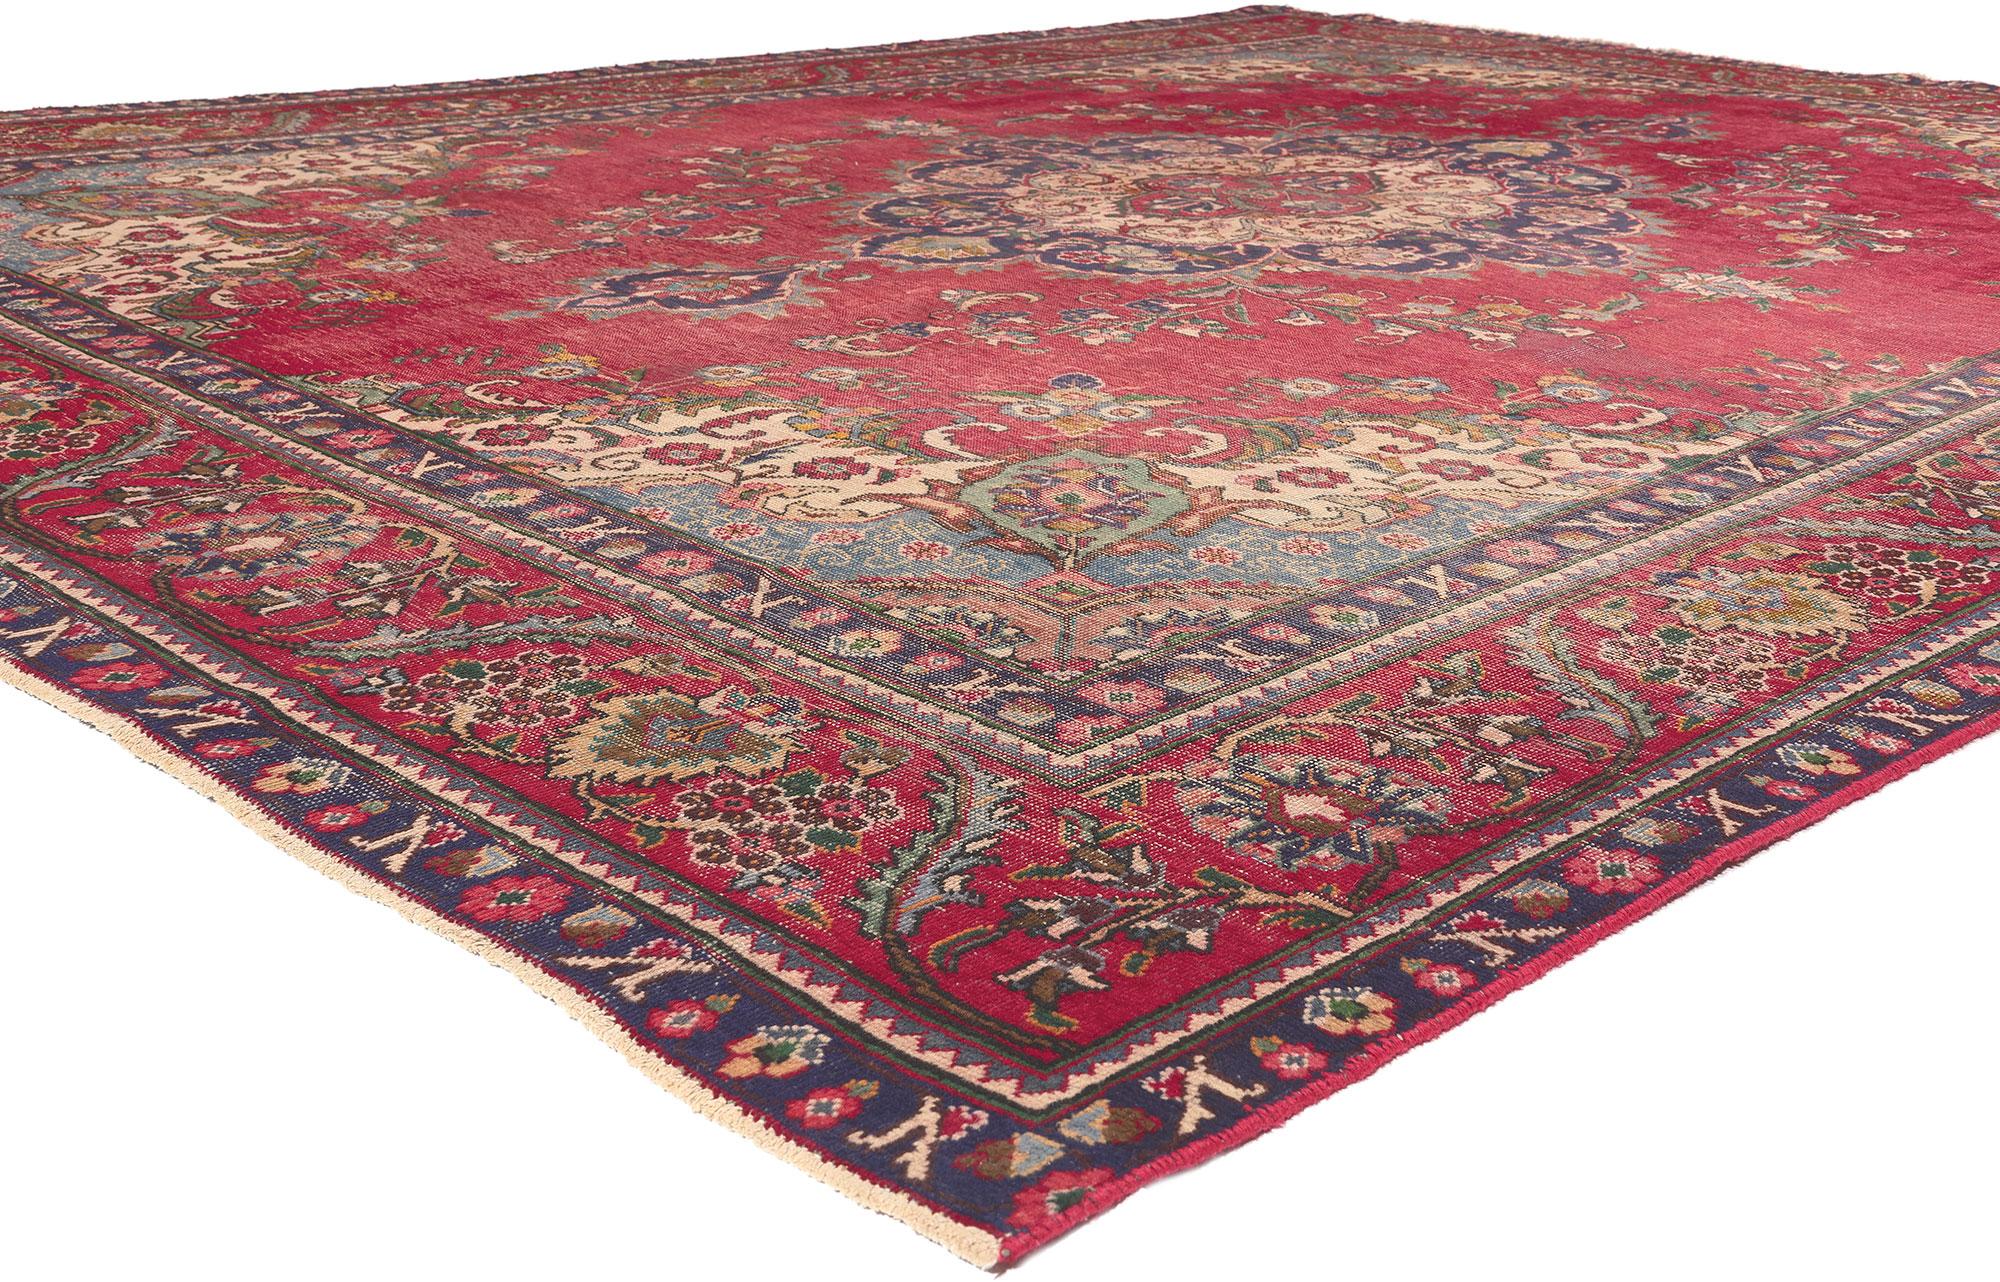 78088 Tapis persan Tabriz ancien et usé, 09'11 x 12'11. 
La sensibilité rustique rencontre le charme nostalgique dans ce tapis persan Tabriz en laine nouée à la main et usée à l'ancienne. Le design floral complexe et la palette de couleurs